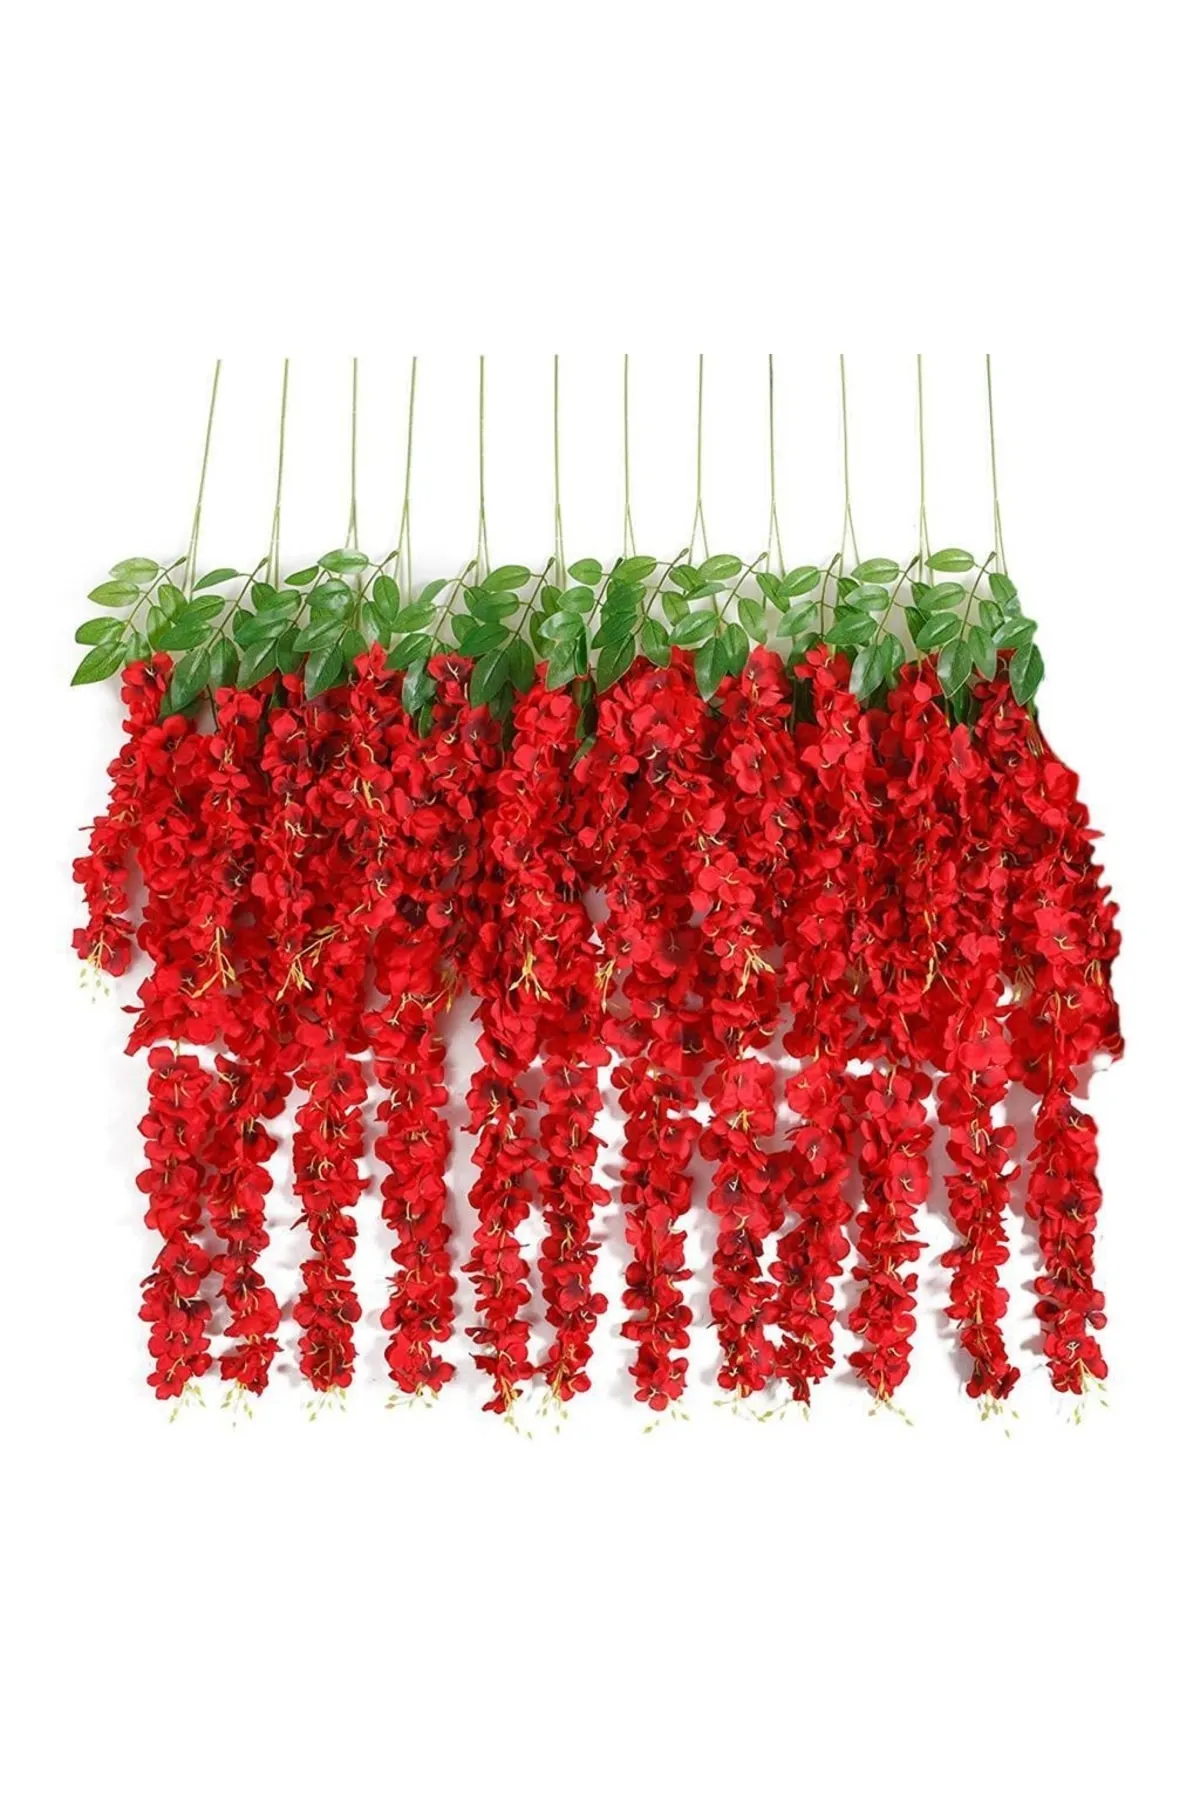 Yapay Çiçek Deposu - Yapay Sarkan Akasya Çiçeği 80-110 cm Kırmızı 12li Paket